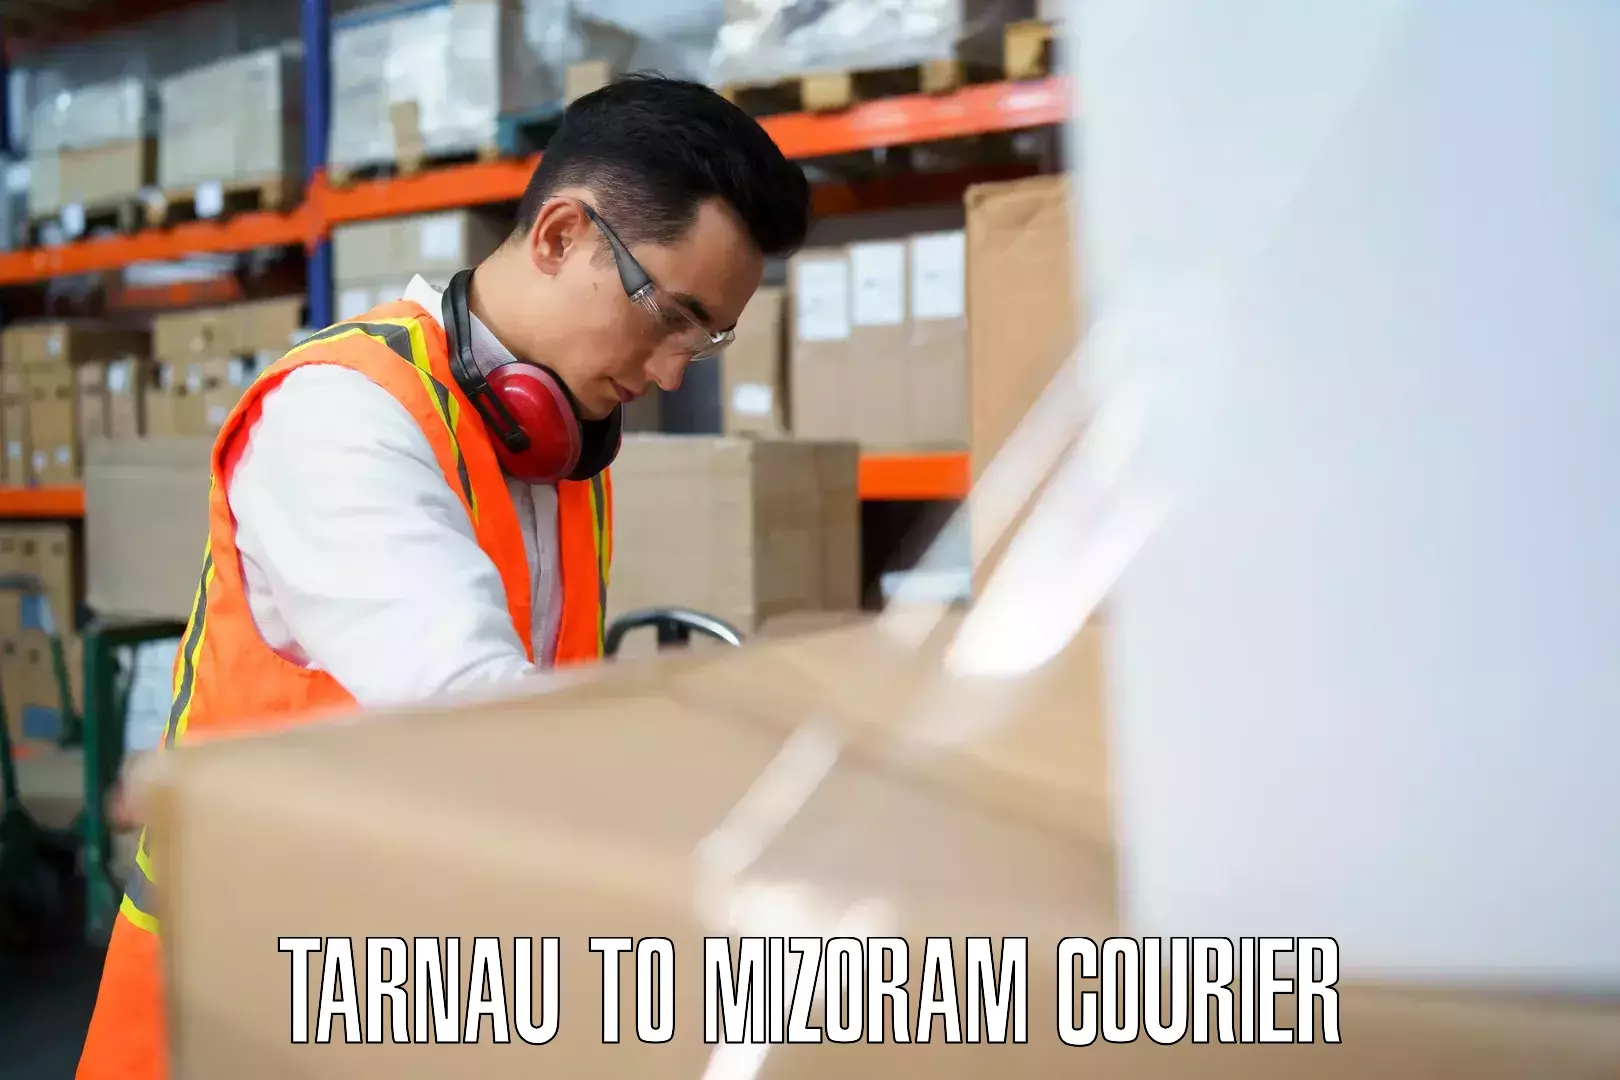 Quick luggage shipment Tarnau to Darlawn